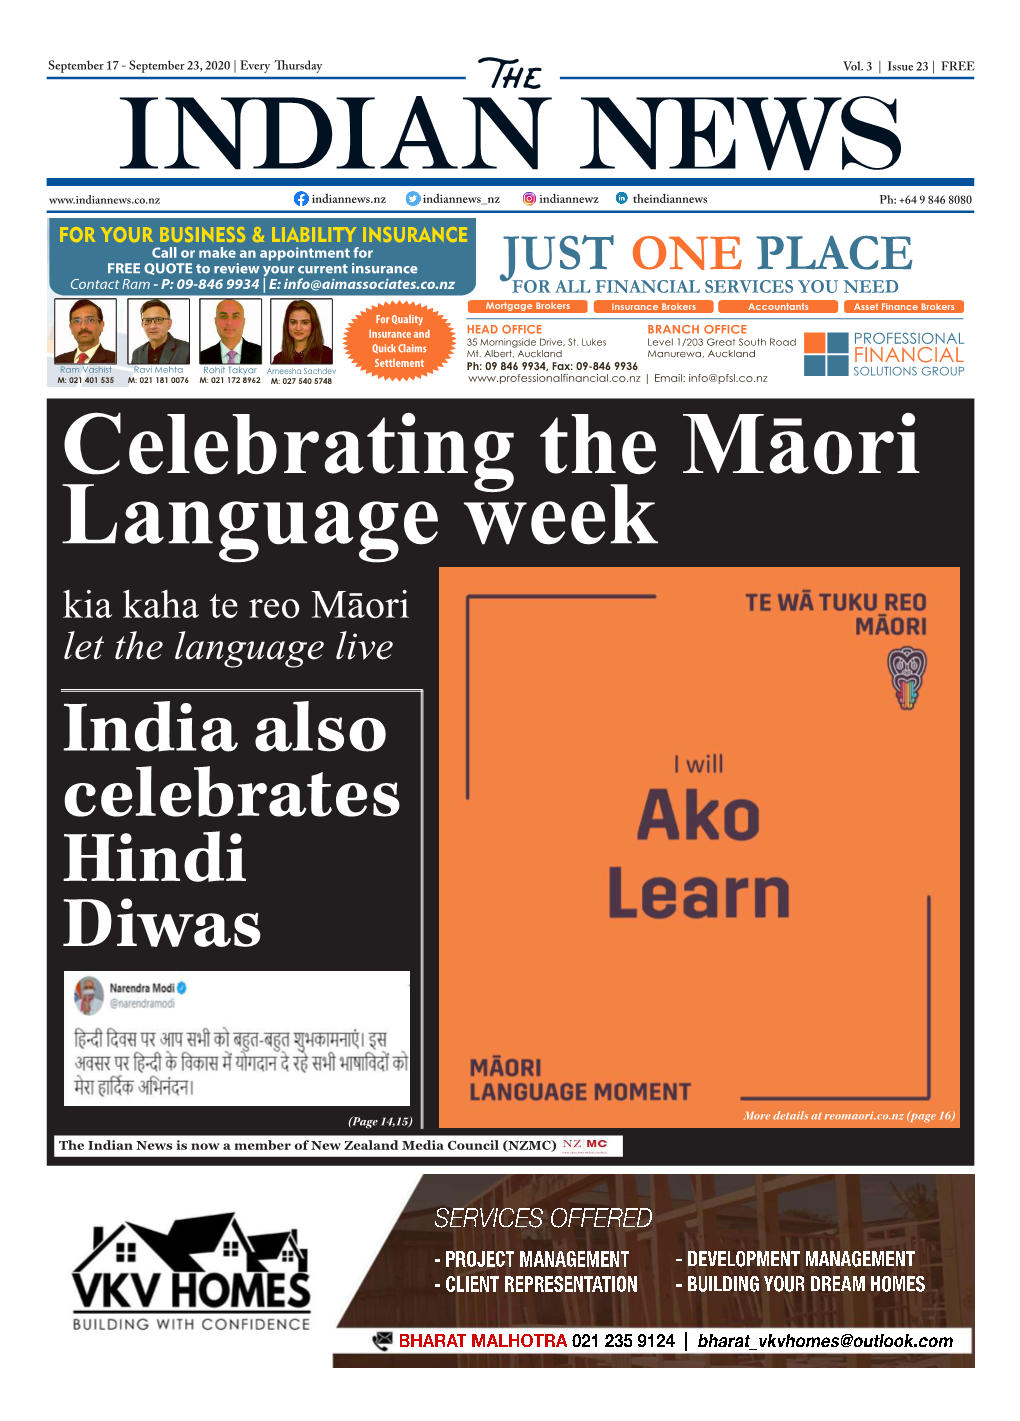 India Also Celebrates Hindi Diwas